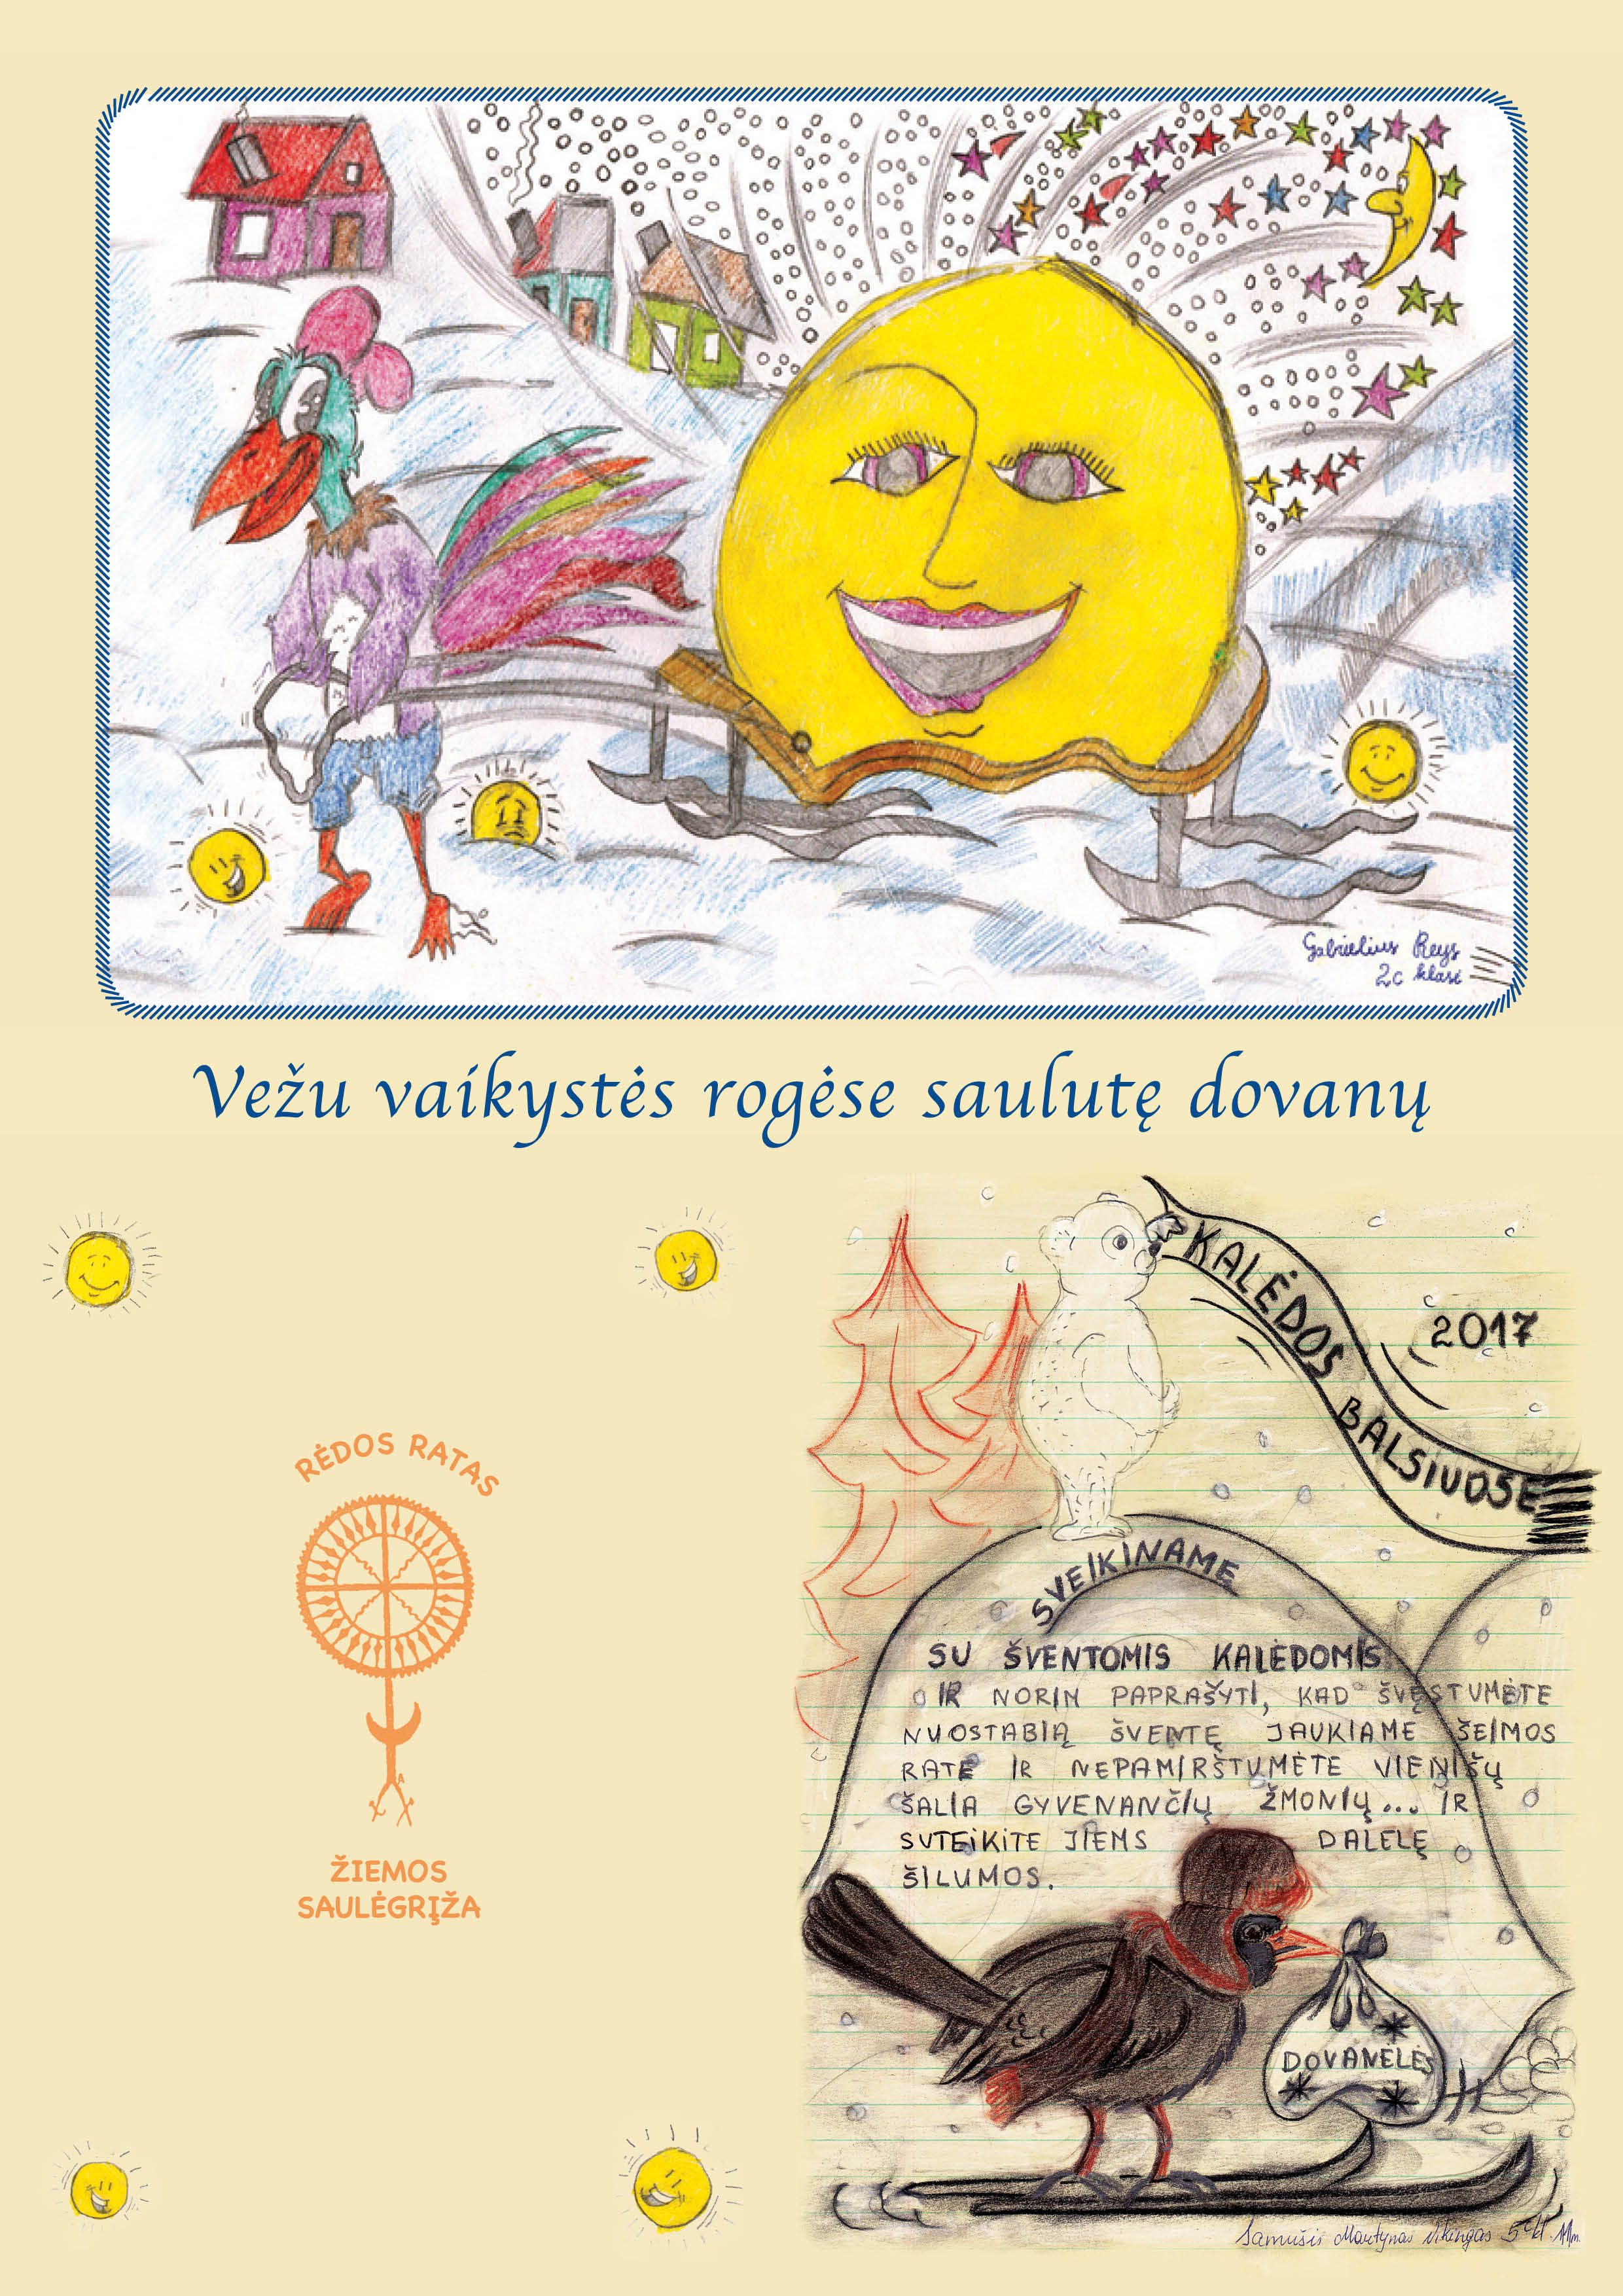 Kalėdinio atviruko piešinio ir linkėjimo sukūrimo konkursas Vilniaus Balsių progimnazijos mokiniams